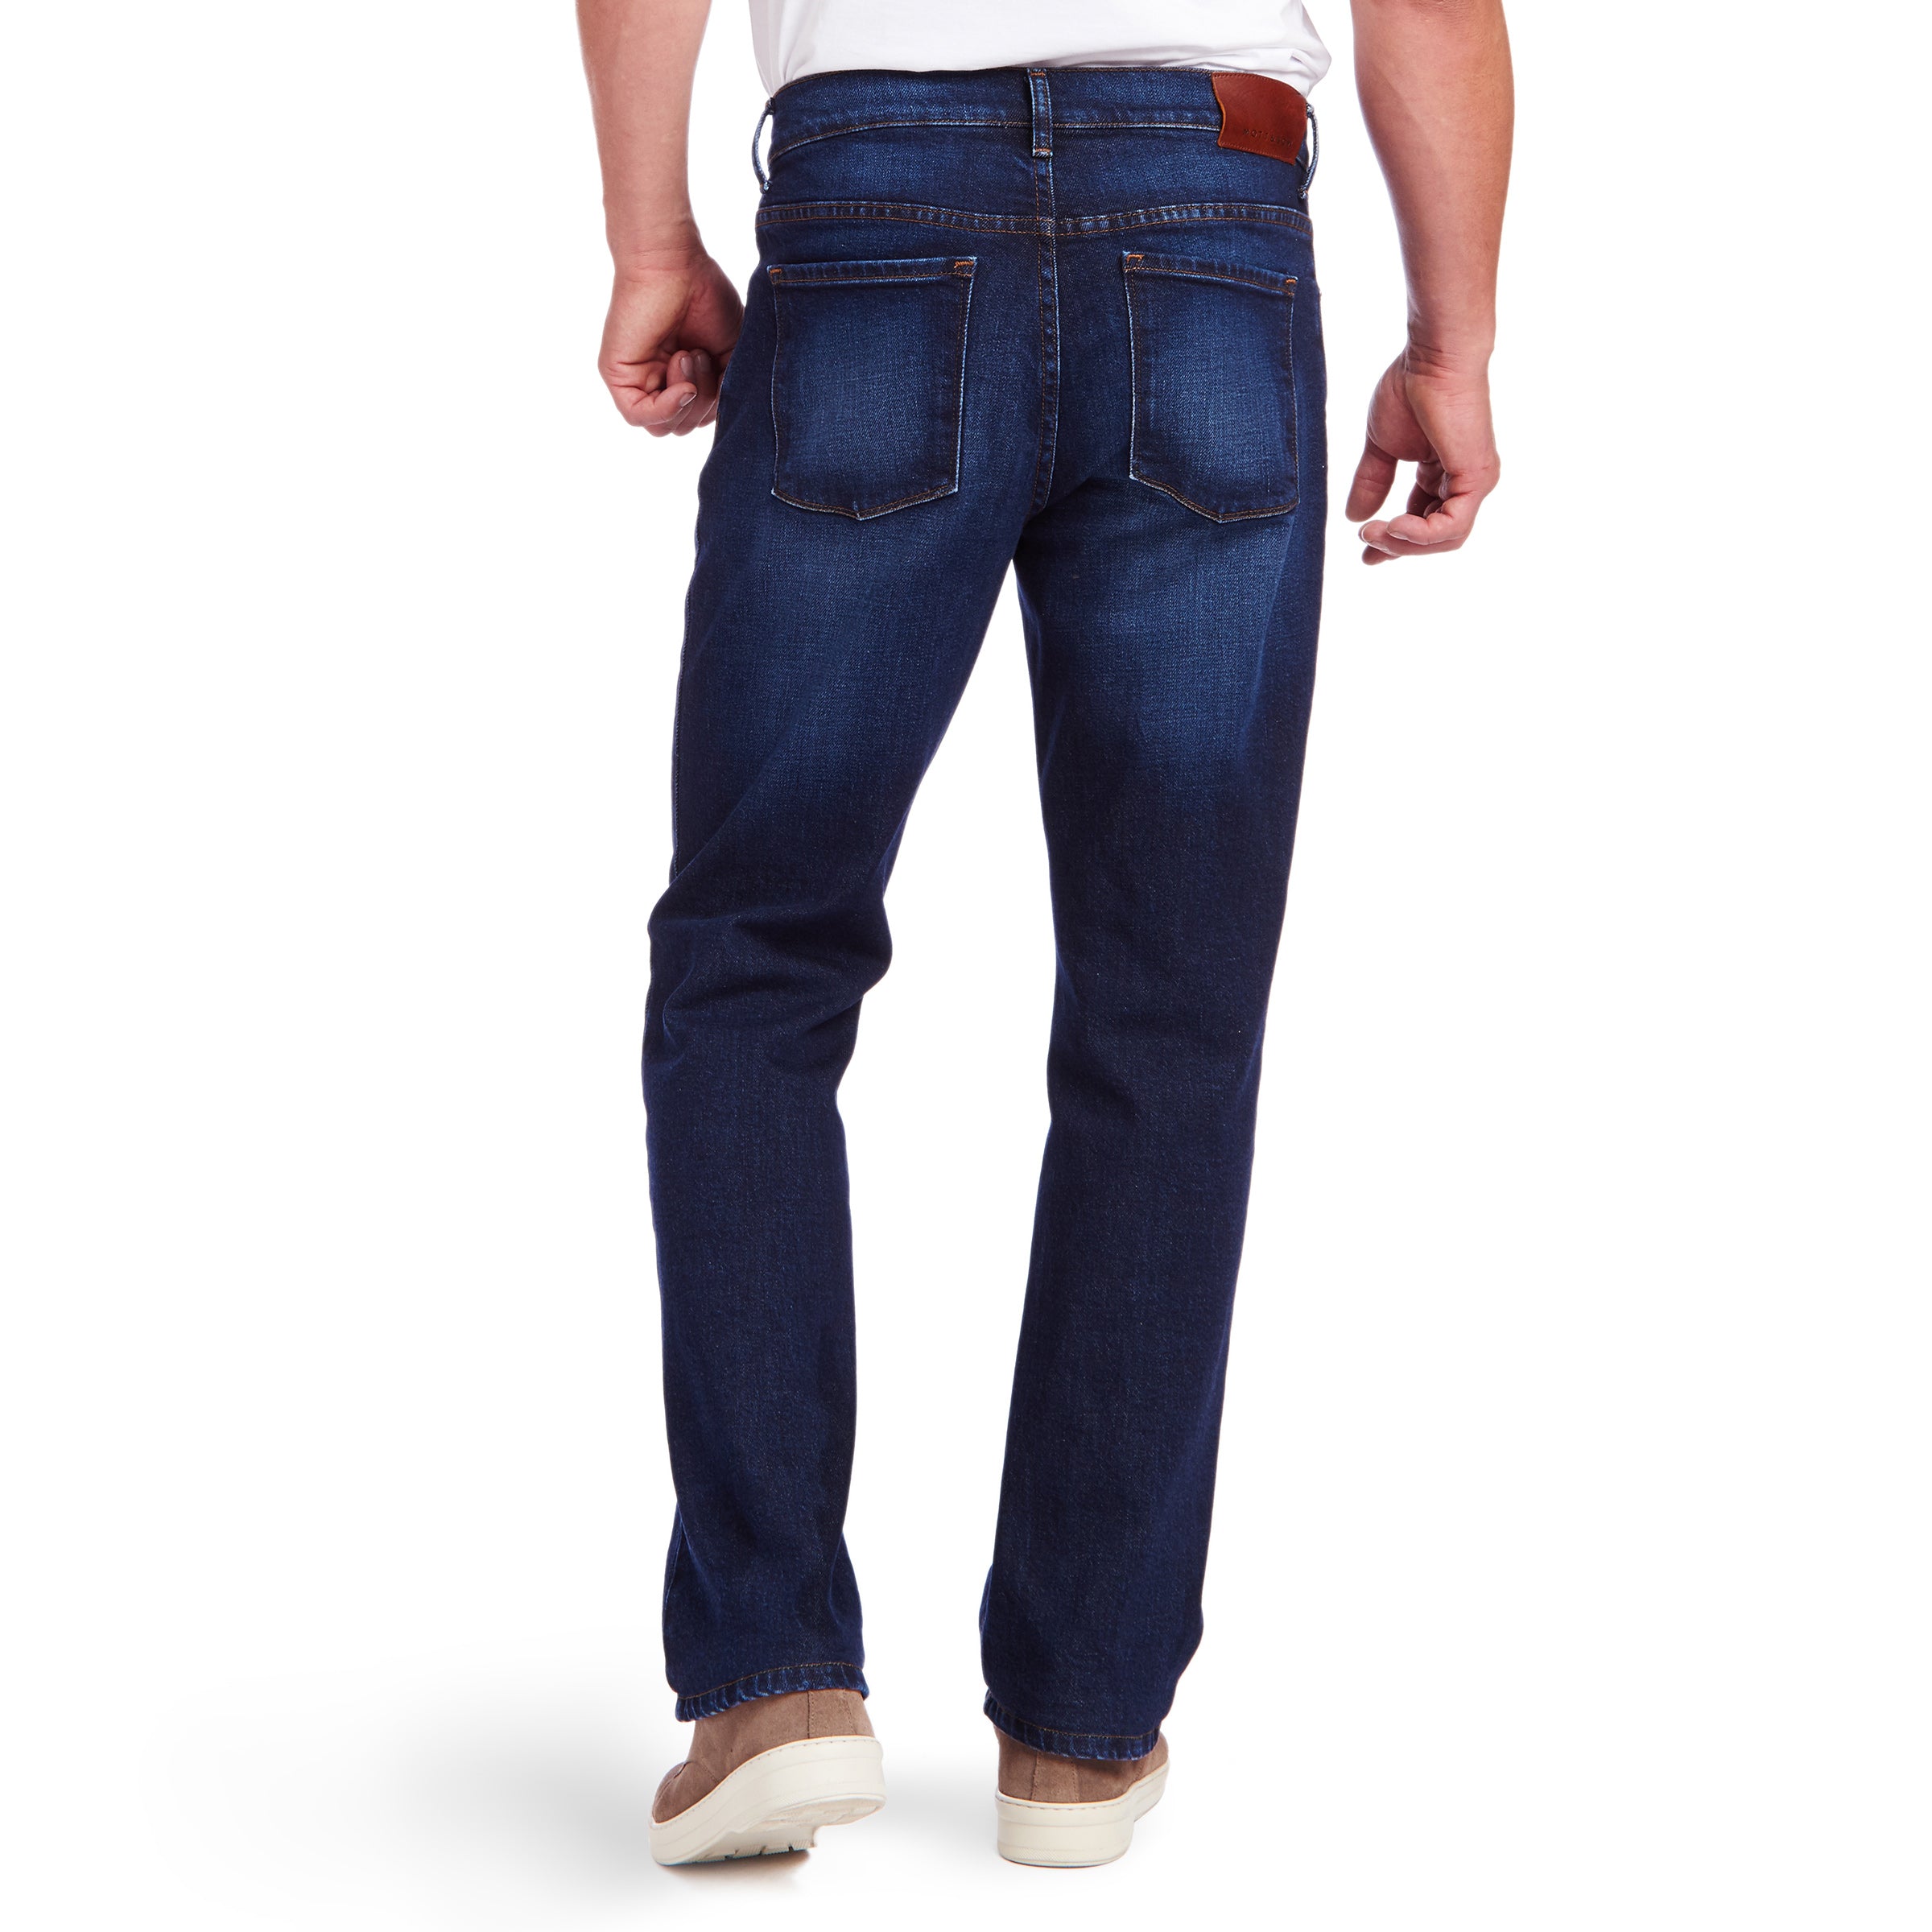 Men wearing Bleu  Médium/Foncé Straight Hubert Jeans